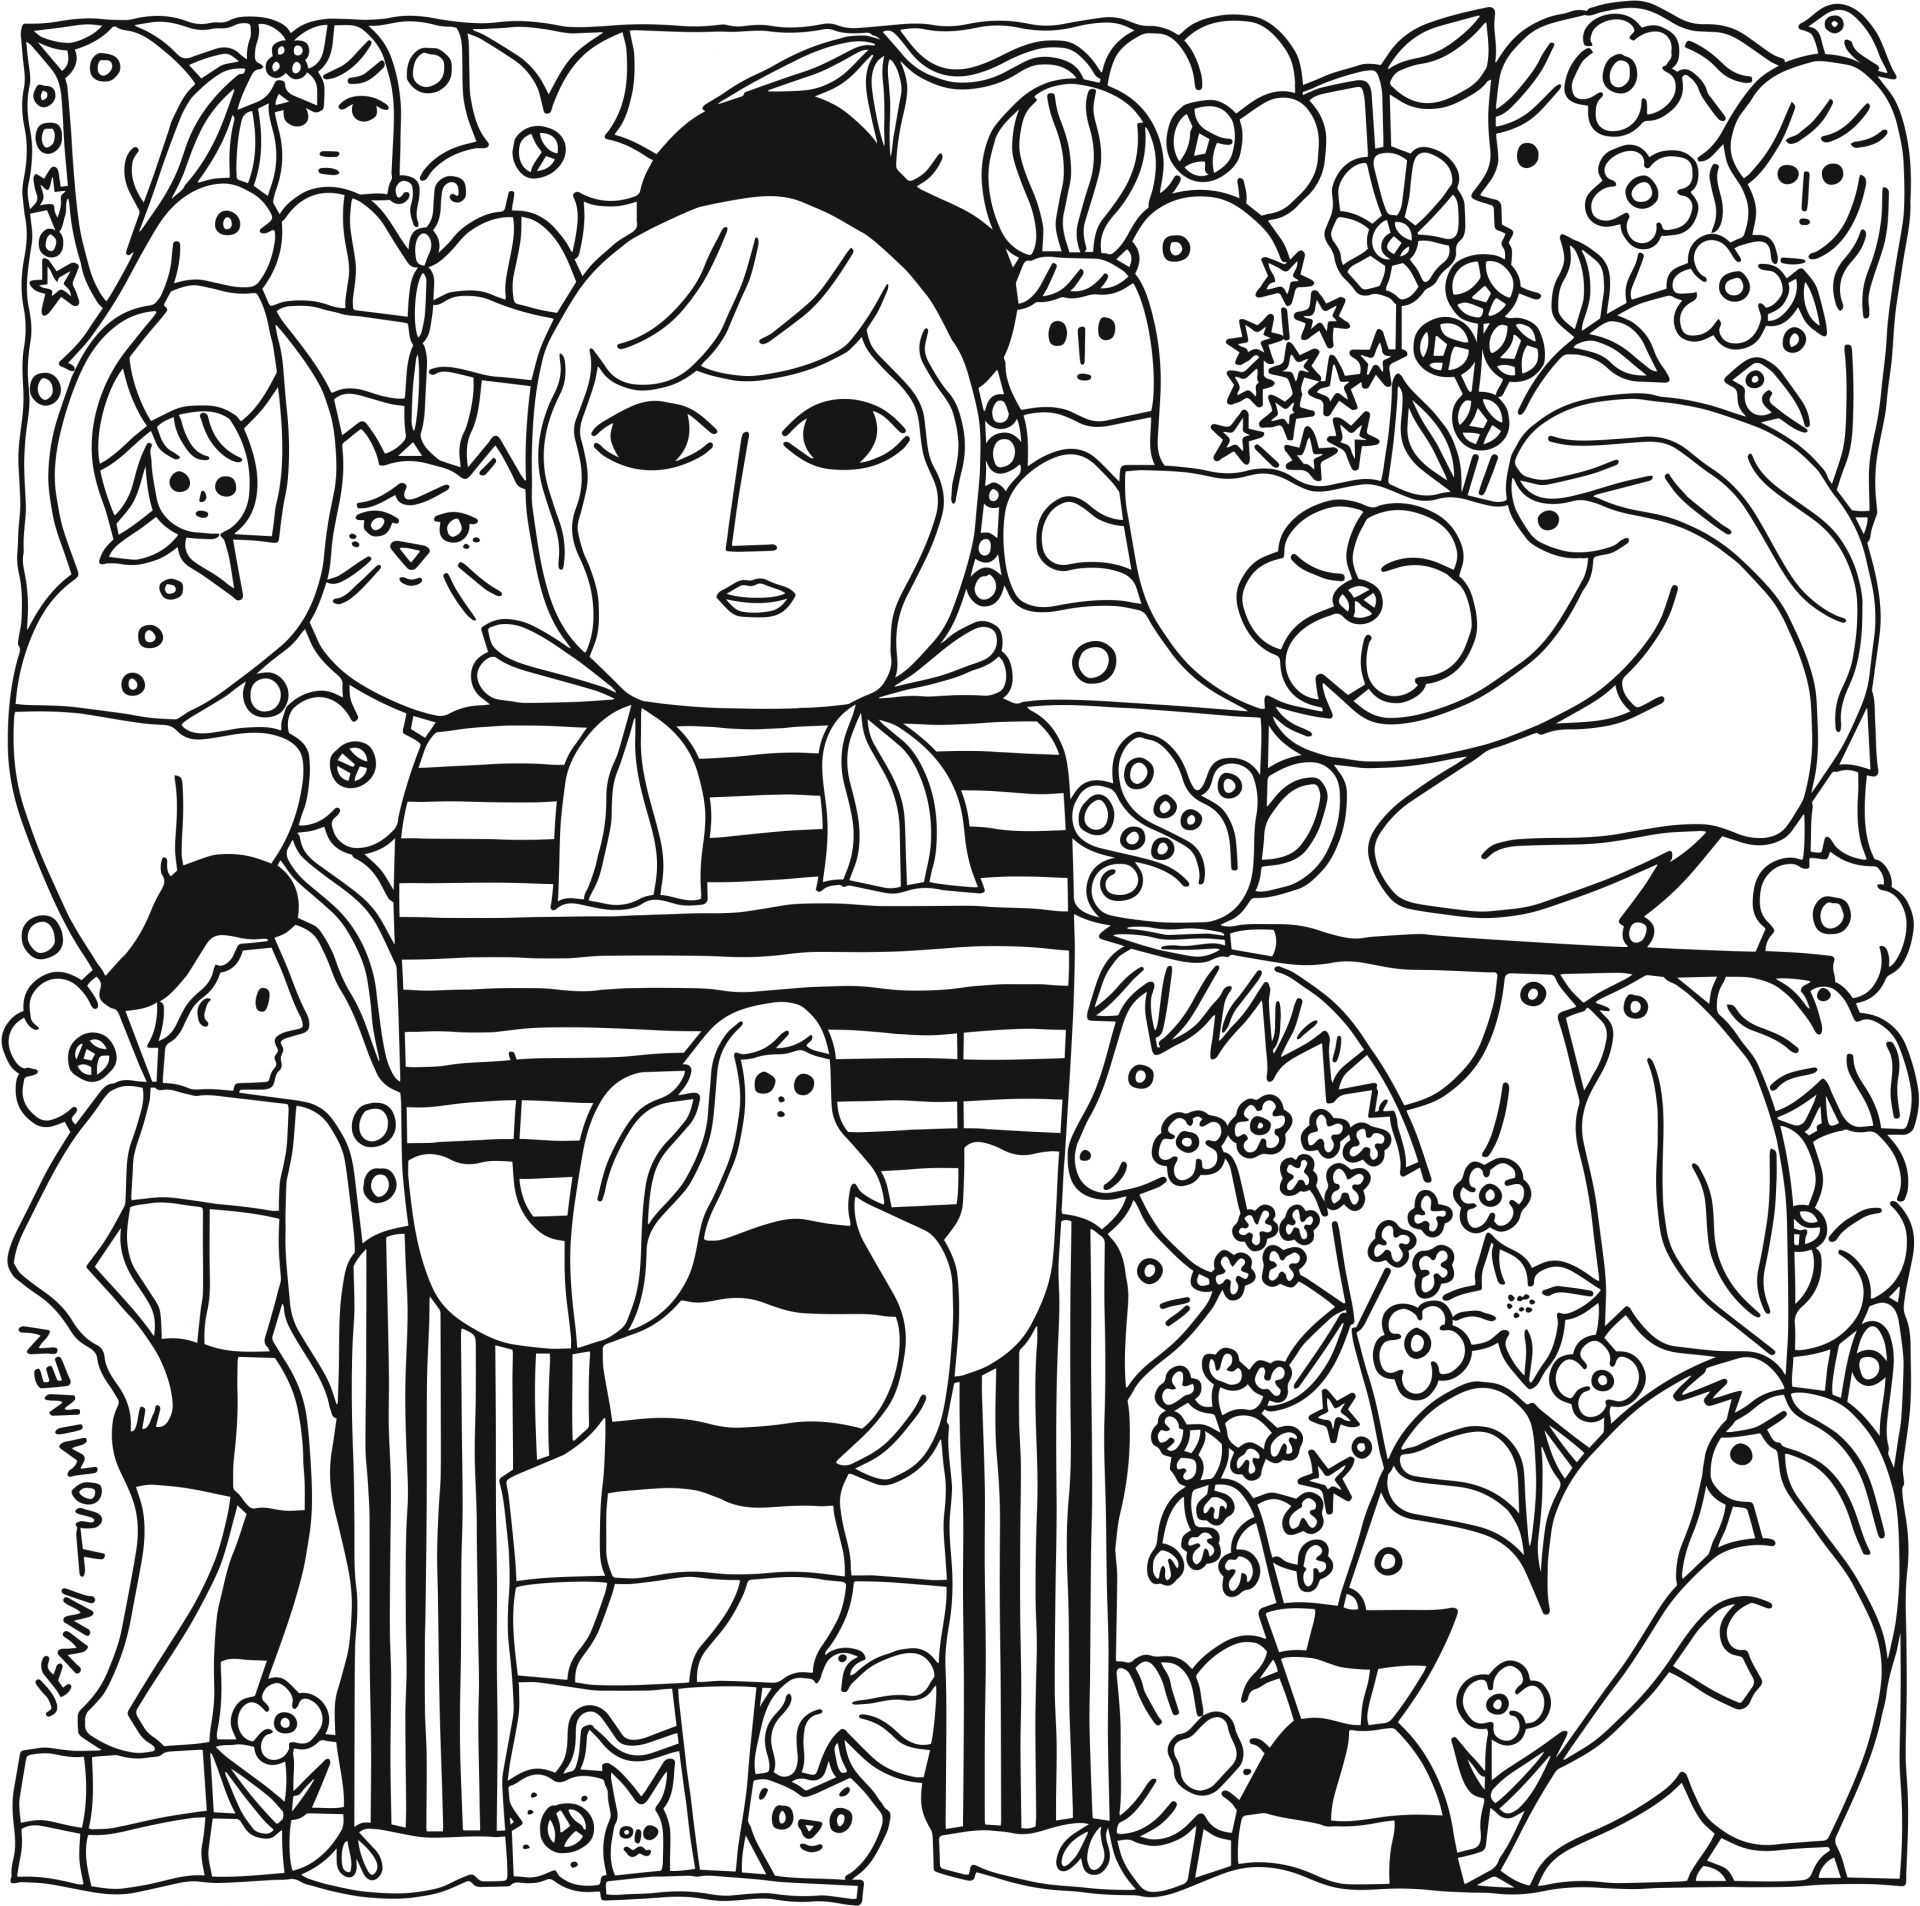 Mustavalkoinen kuva, ihmis- ja eläinhahmoja, keskella ihmishammo jolla raidallinen paita ja baskeri. Kuvitus Jenni Tuomisen ekemä, Konstrundan 2022